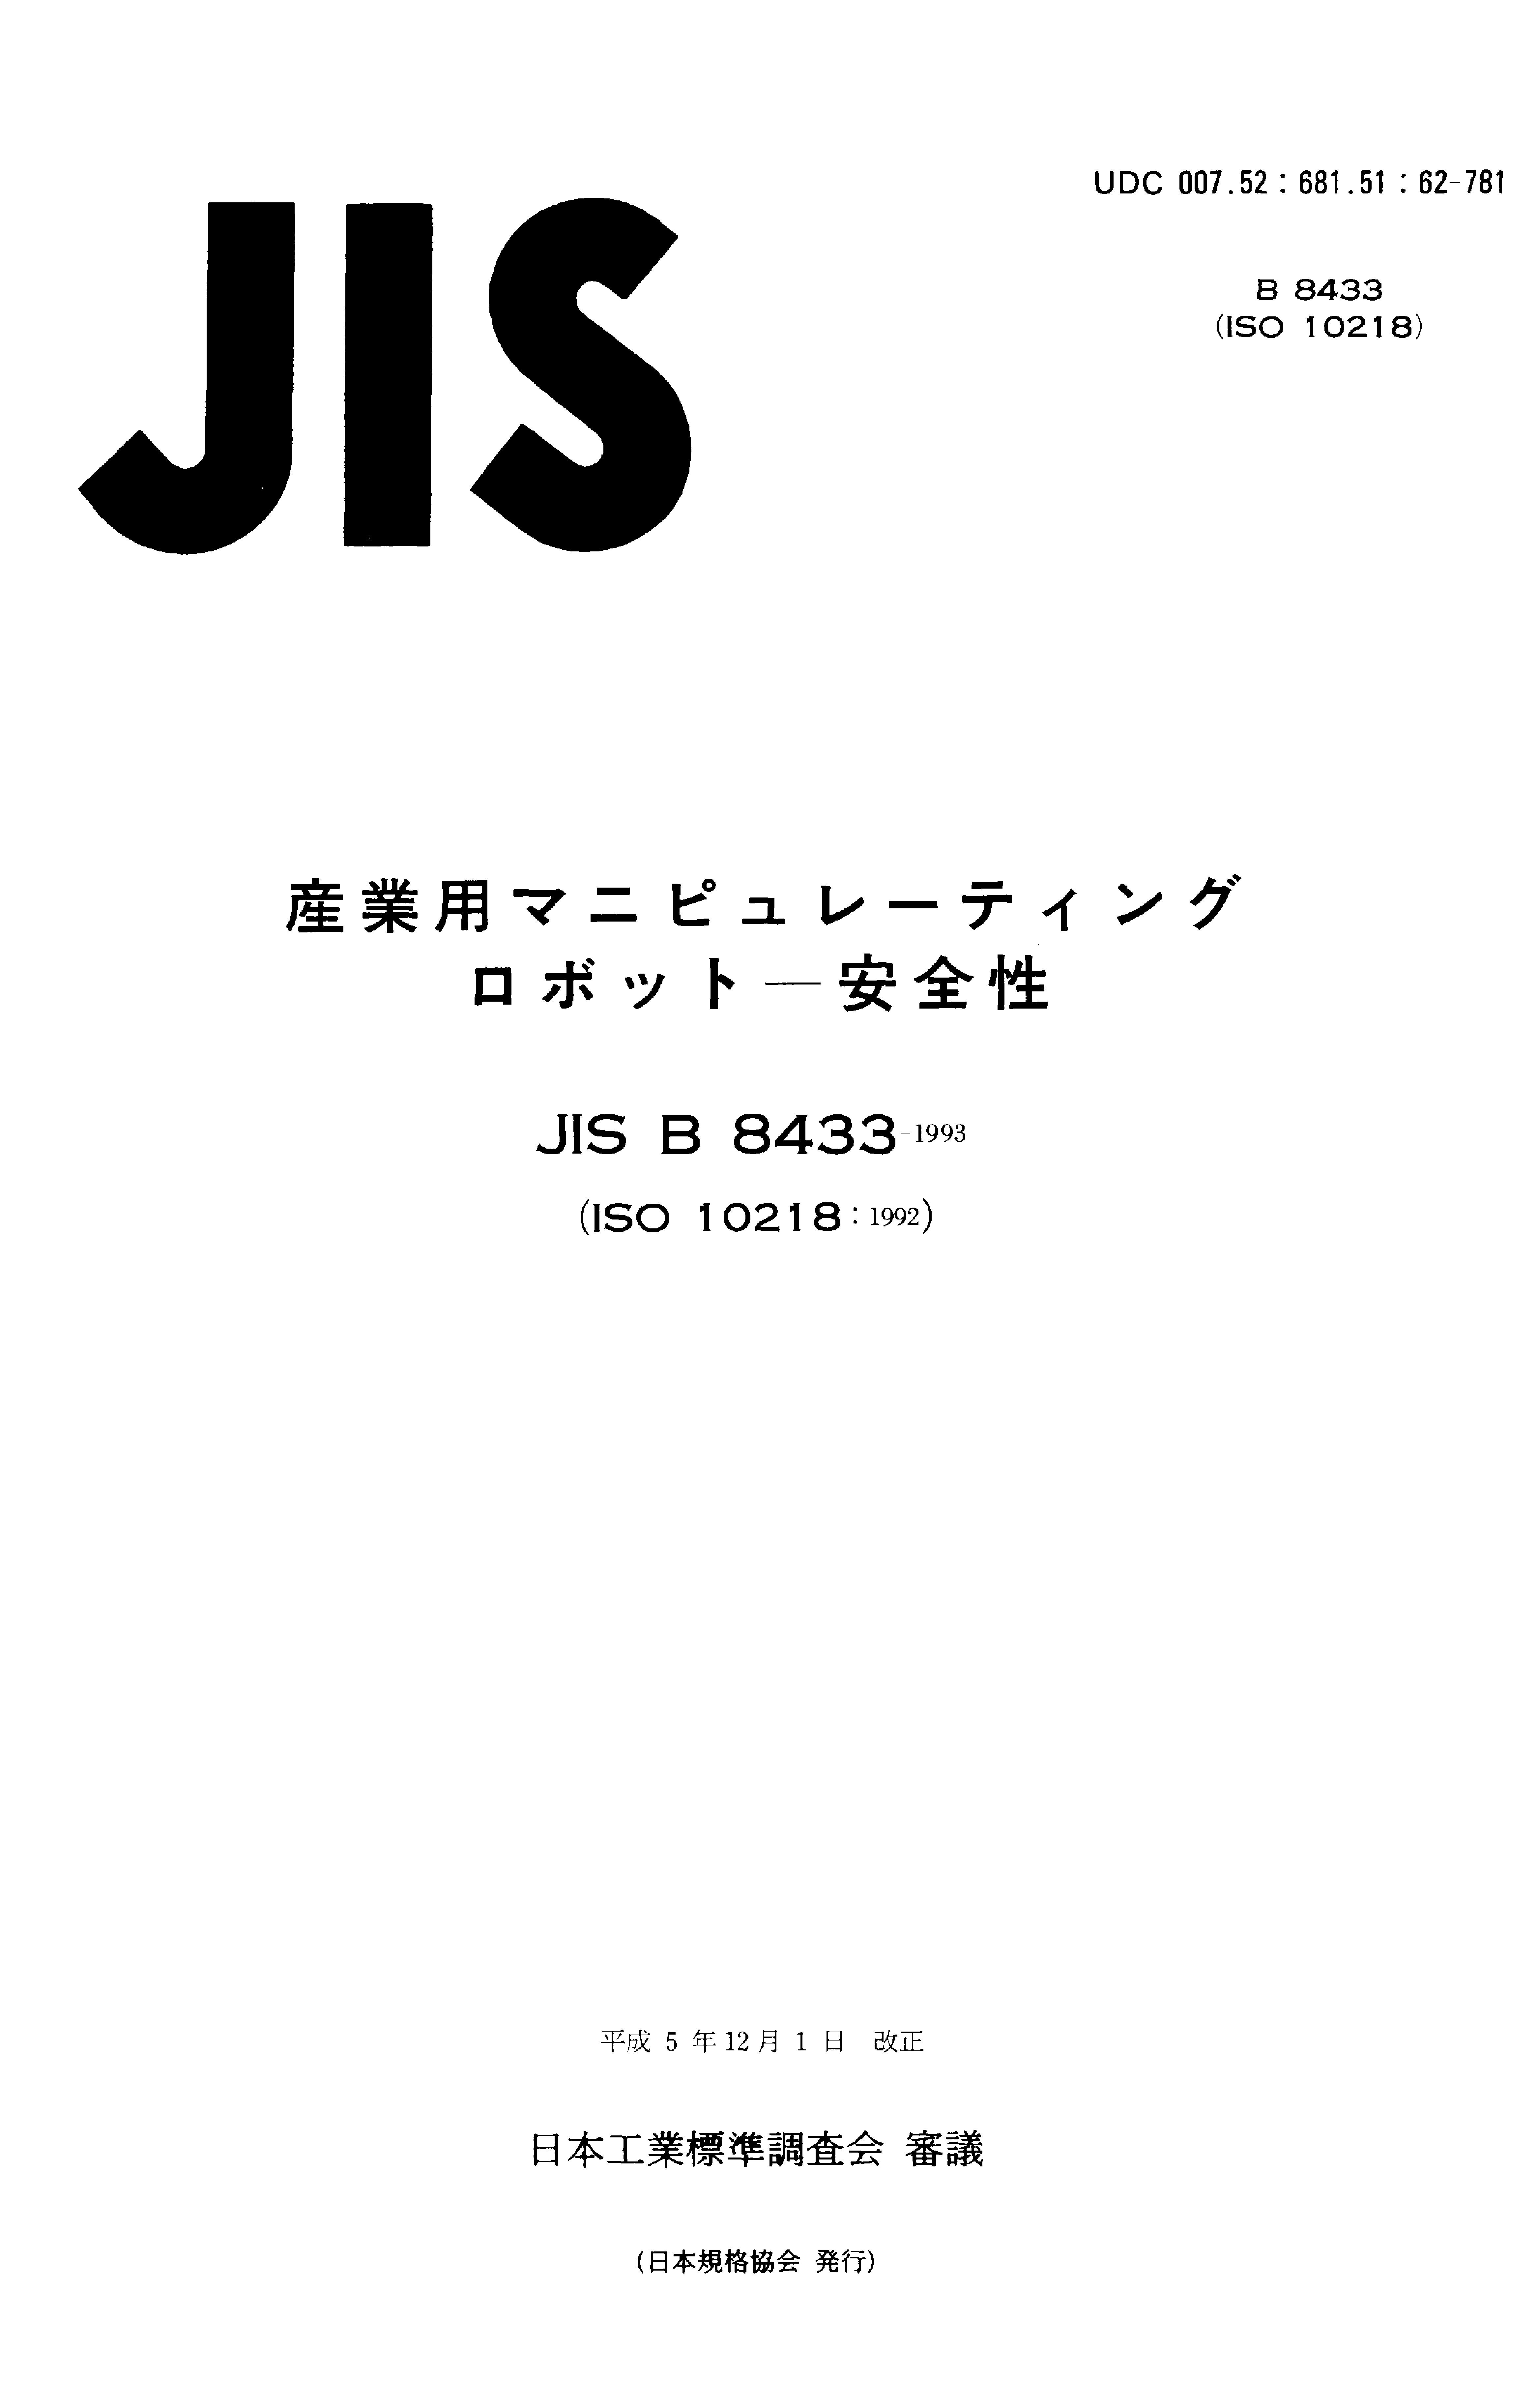 JIS B 8433:1993封面图